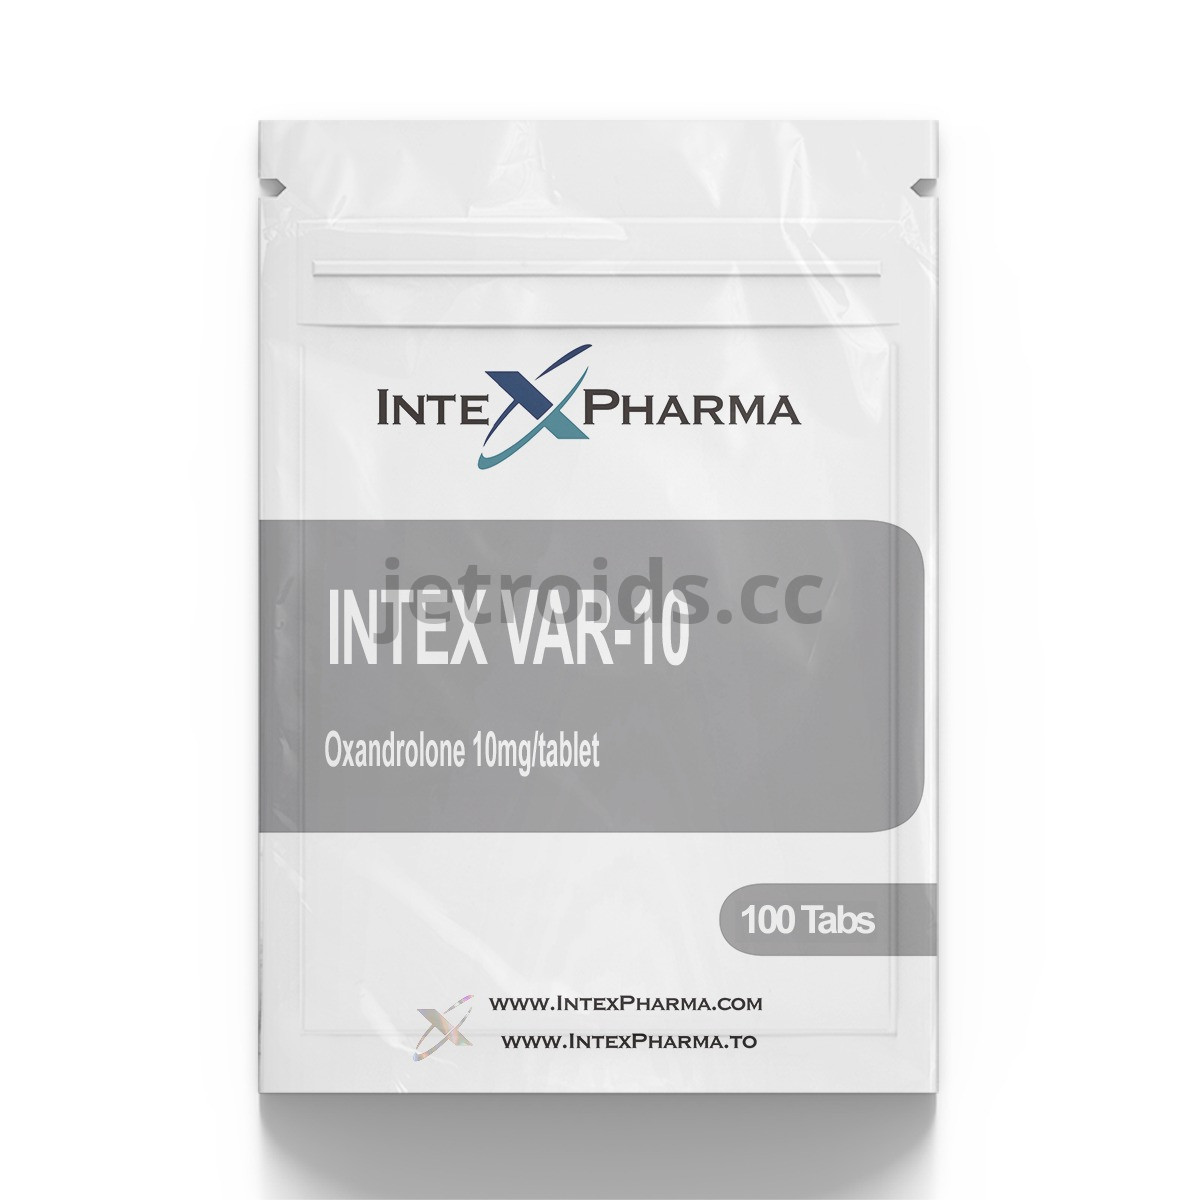 IntexPharma Intex VAR-10 Product Info